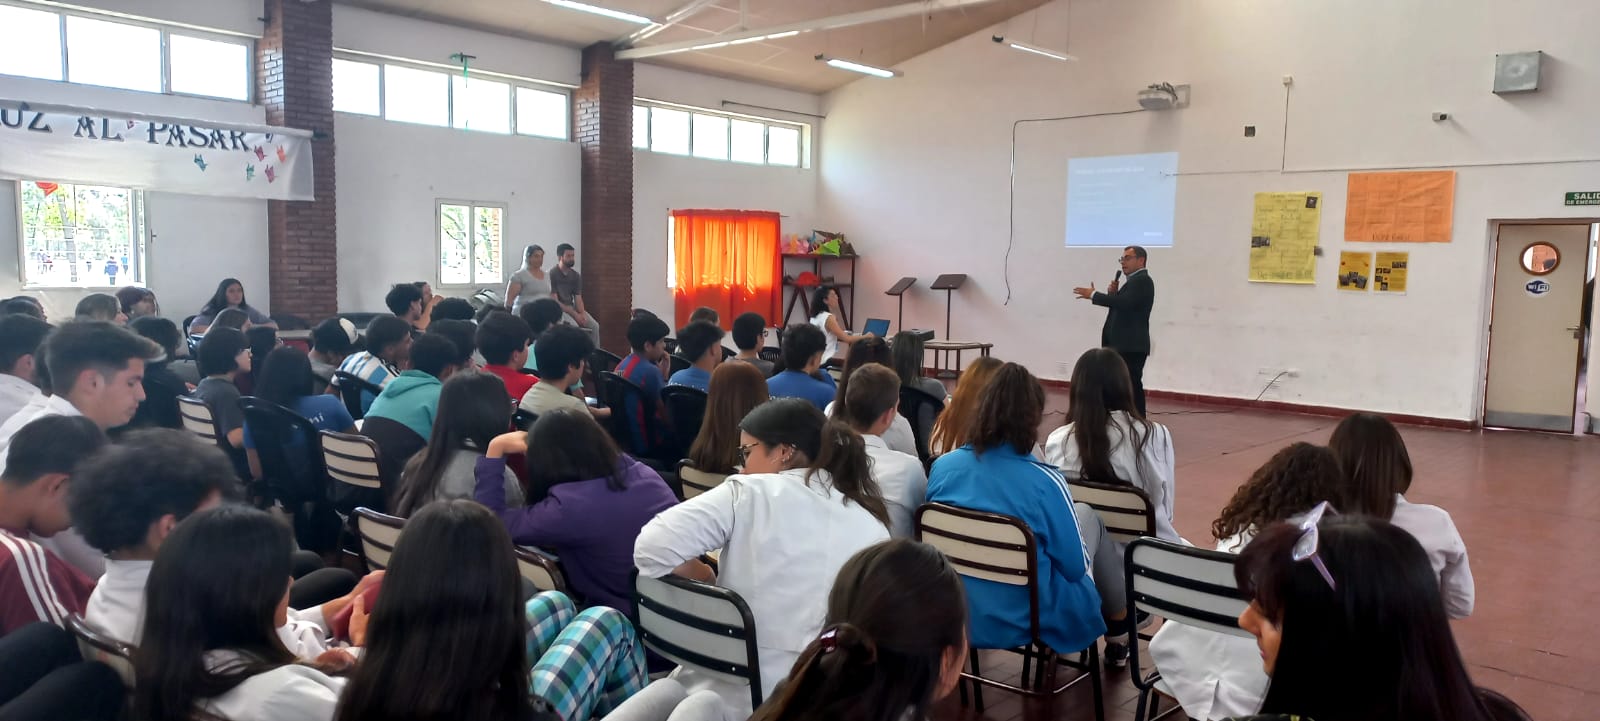 Encuentro de Irrigación y escuela de San Rafael sobre Educación de Riego